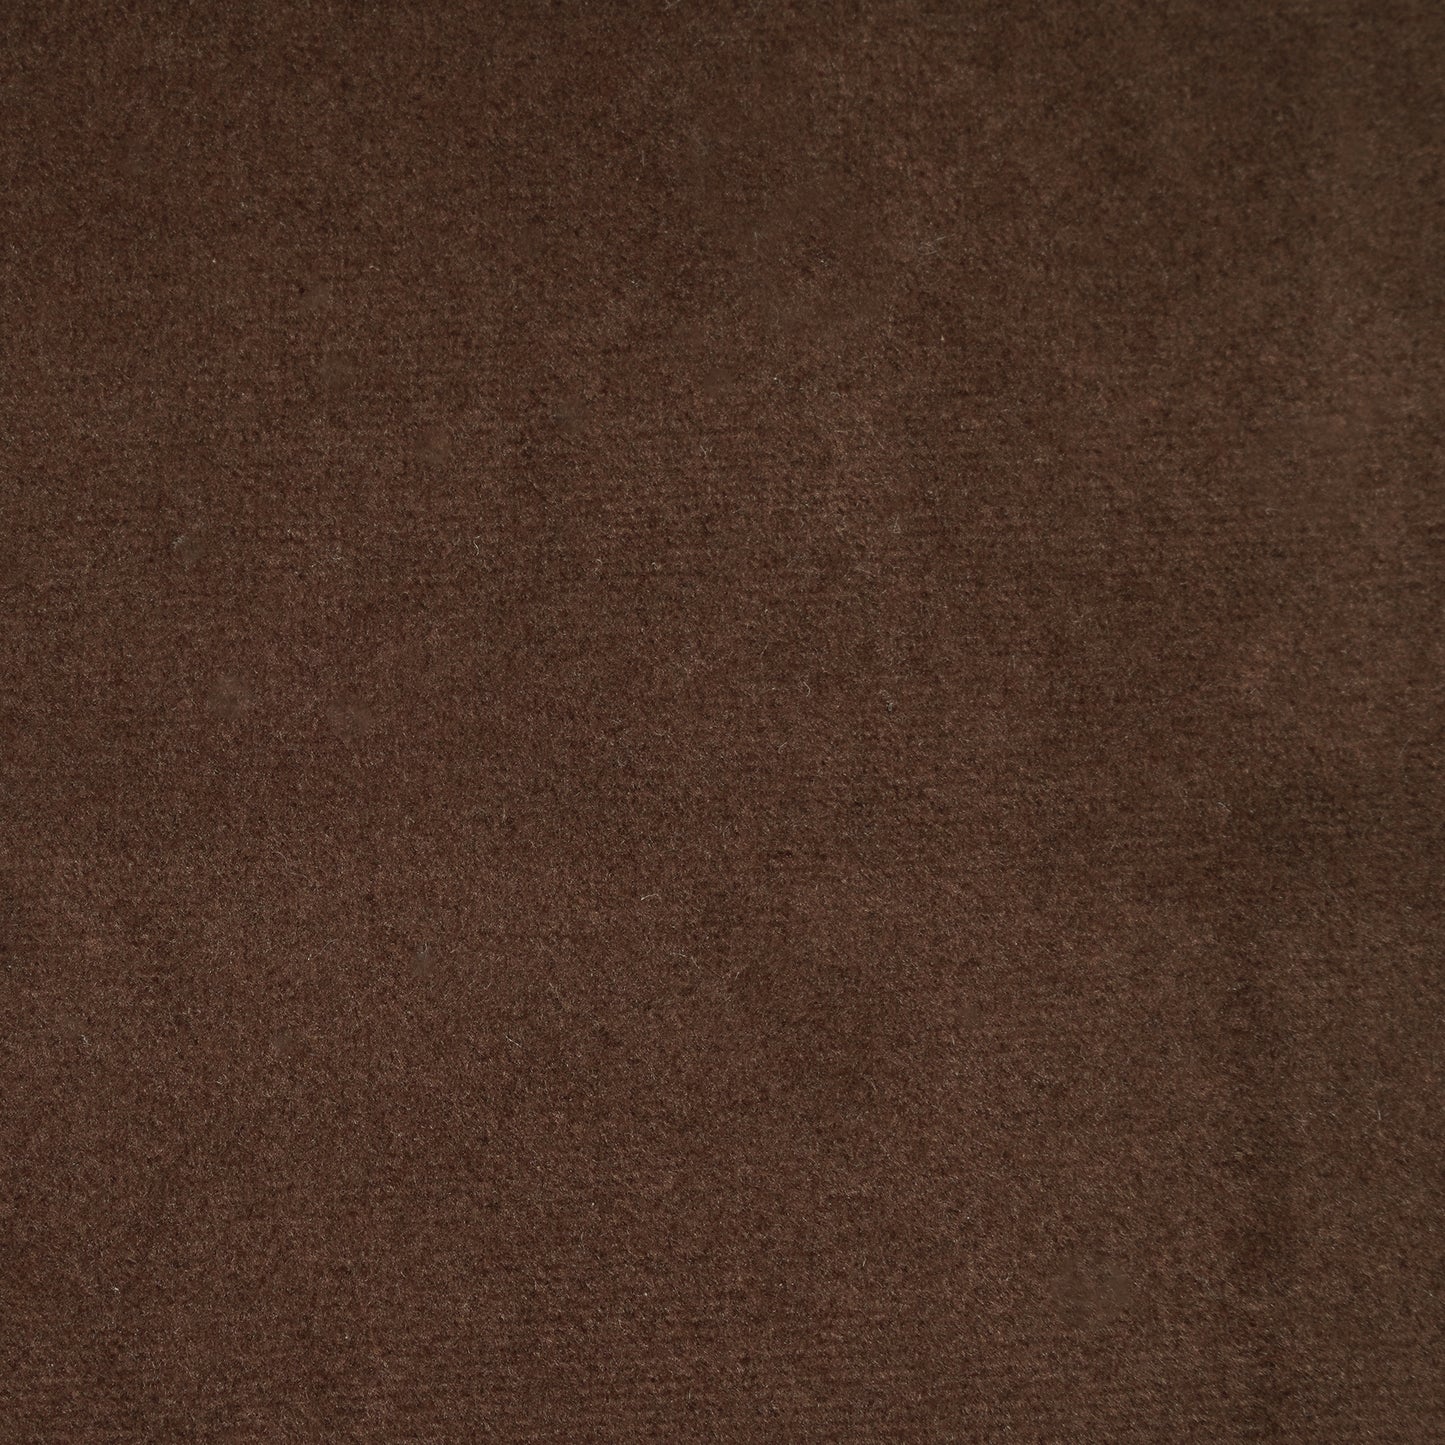 Seven Dark brown velvet